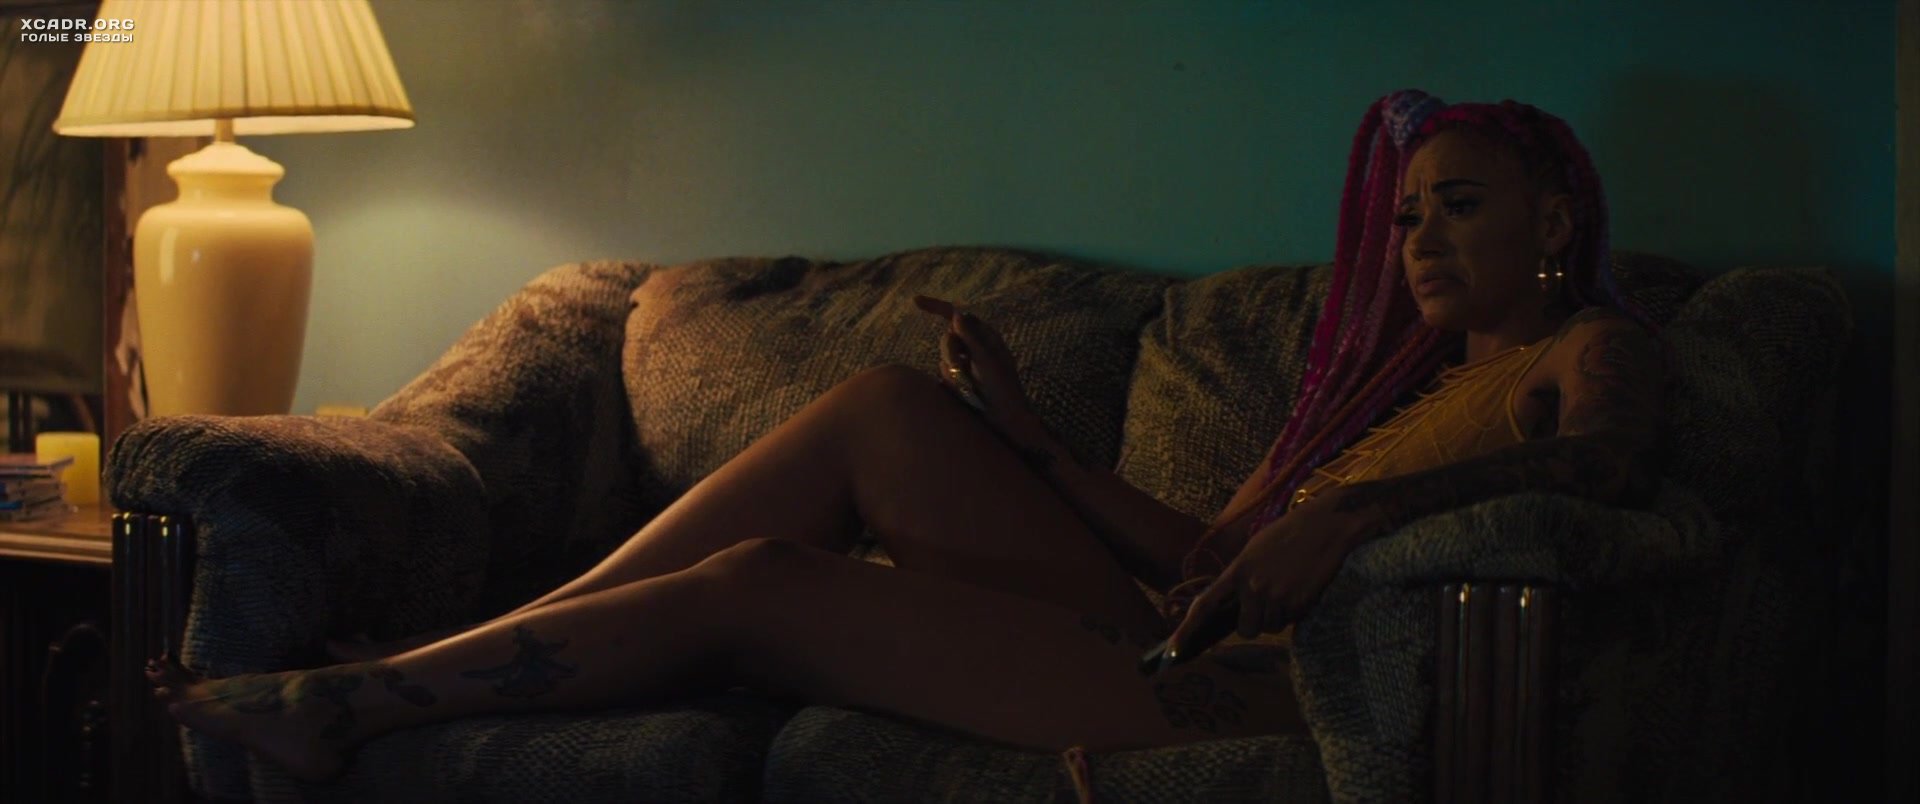 Мелани Хэлфкенни засветила соски - Квин и Слим (2019) XCADR.